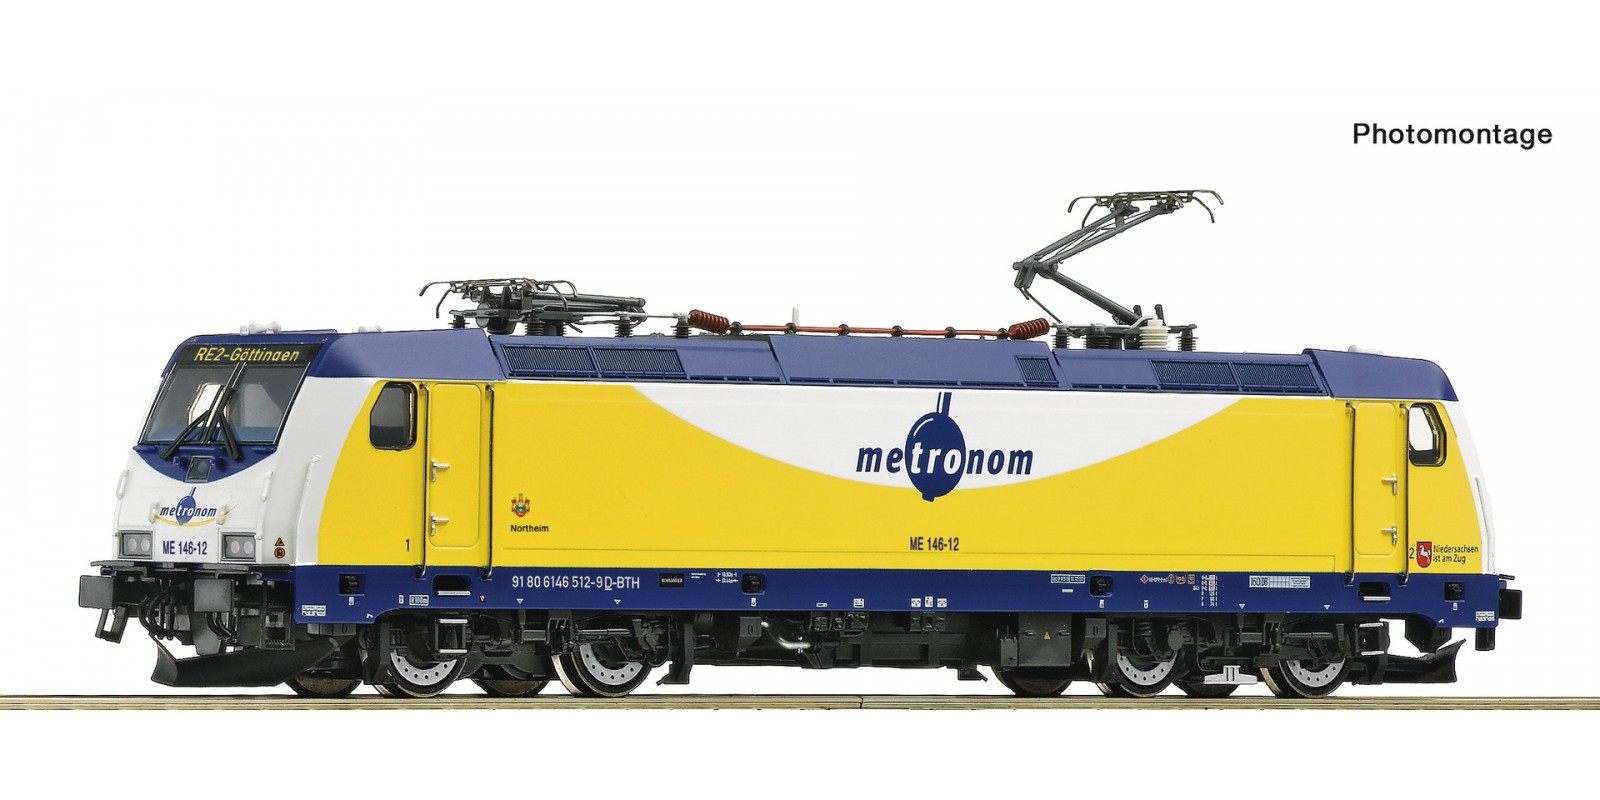 RO7500037 Electric locomotive ME 14 6-12, metronom           